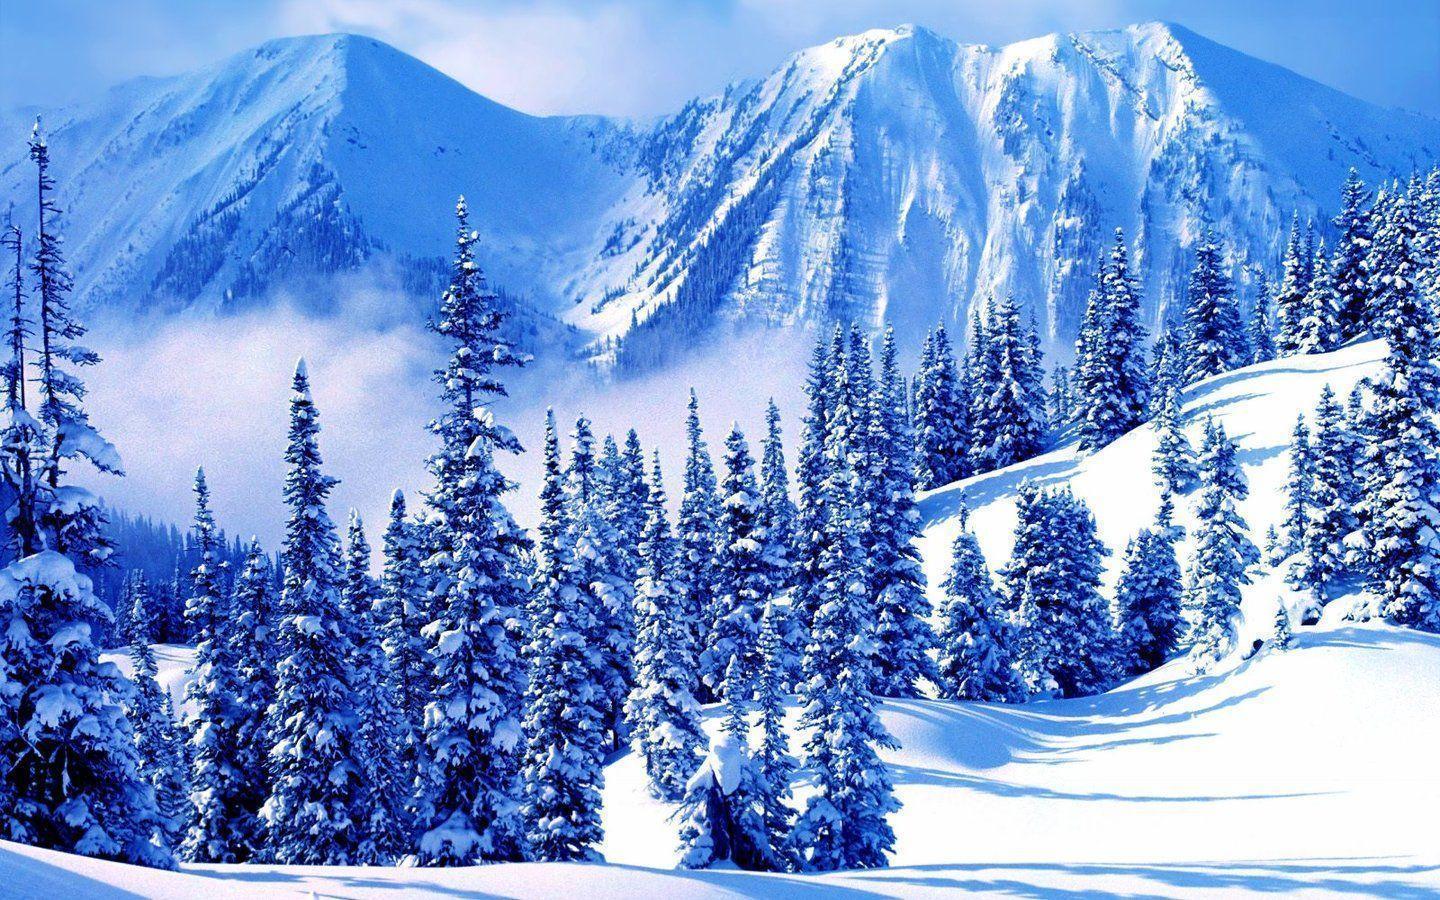 Winter Mountain High Definition Wallpaper Wallpaper. maswallpaper